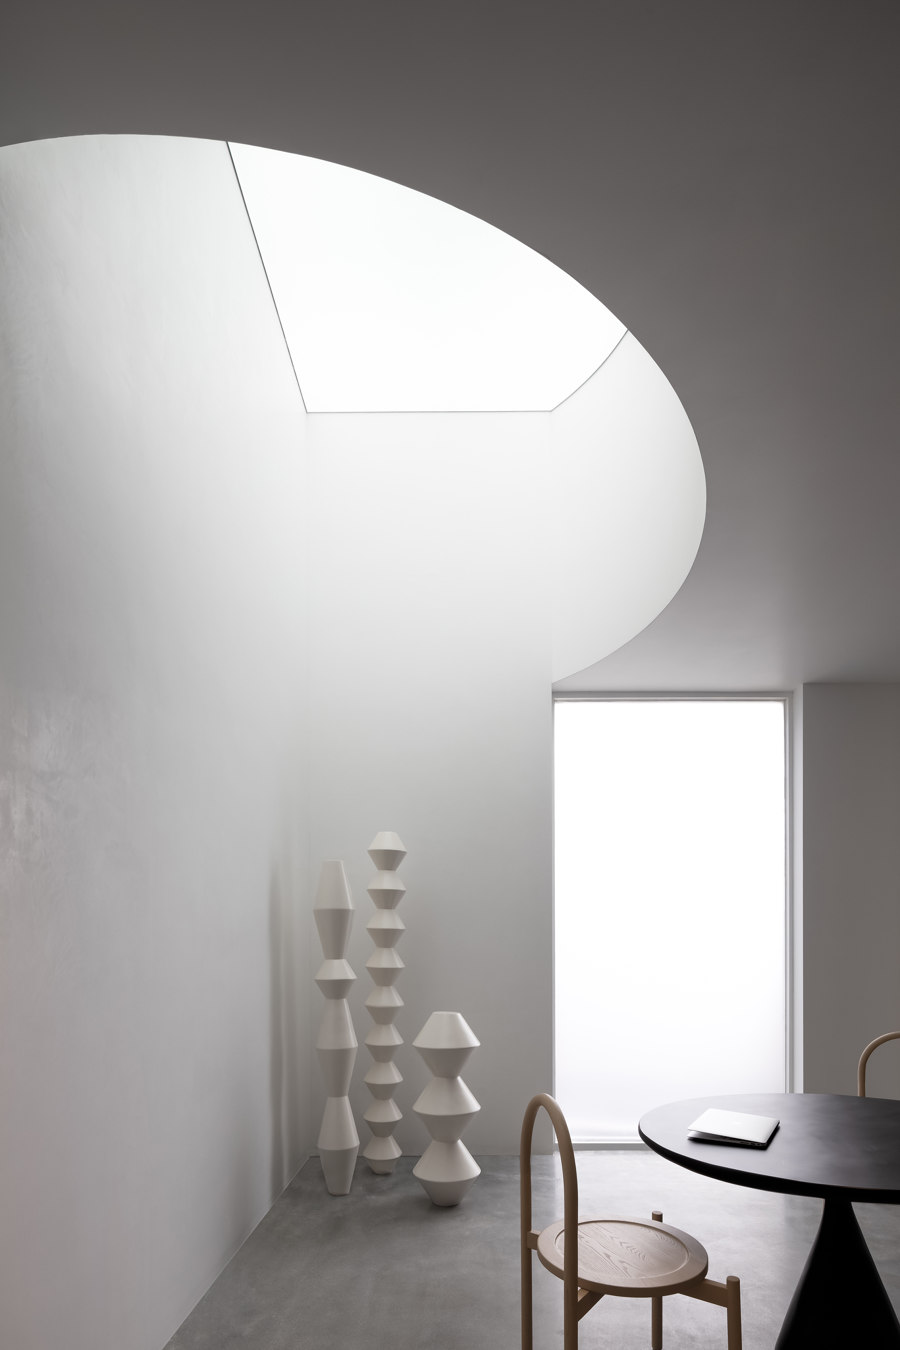 Danilo Paint Showroom de JG Phoenix | Arquitectura de interior